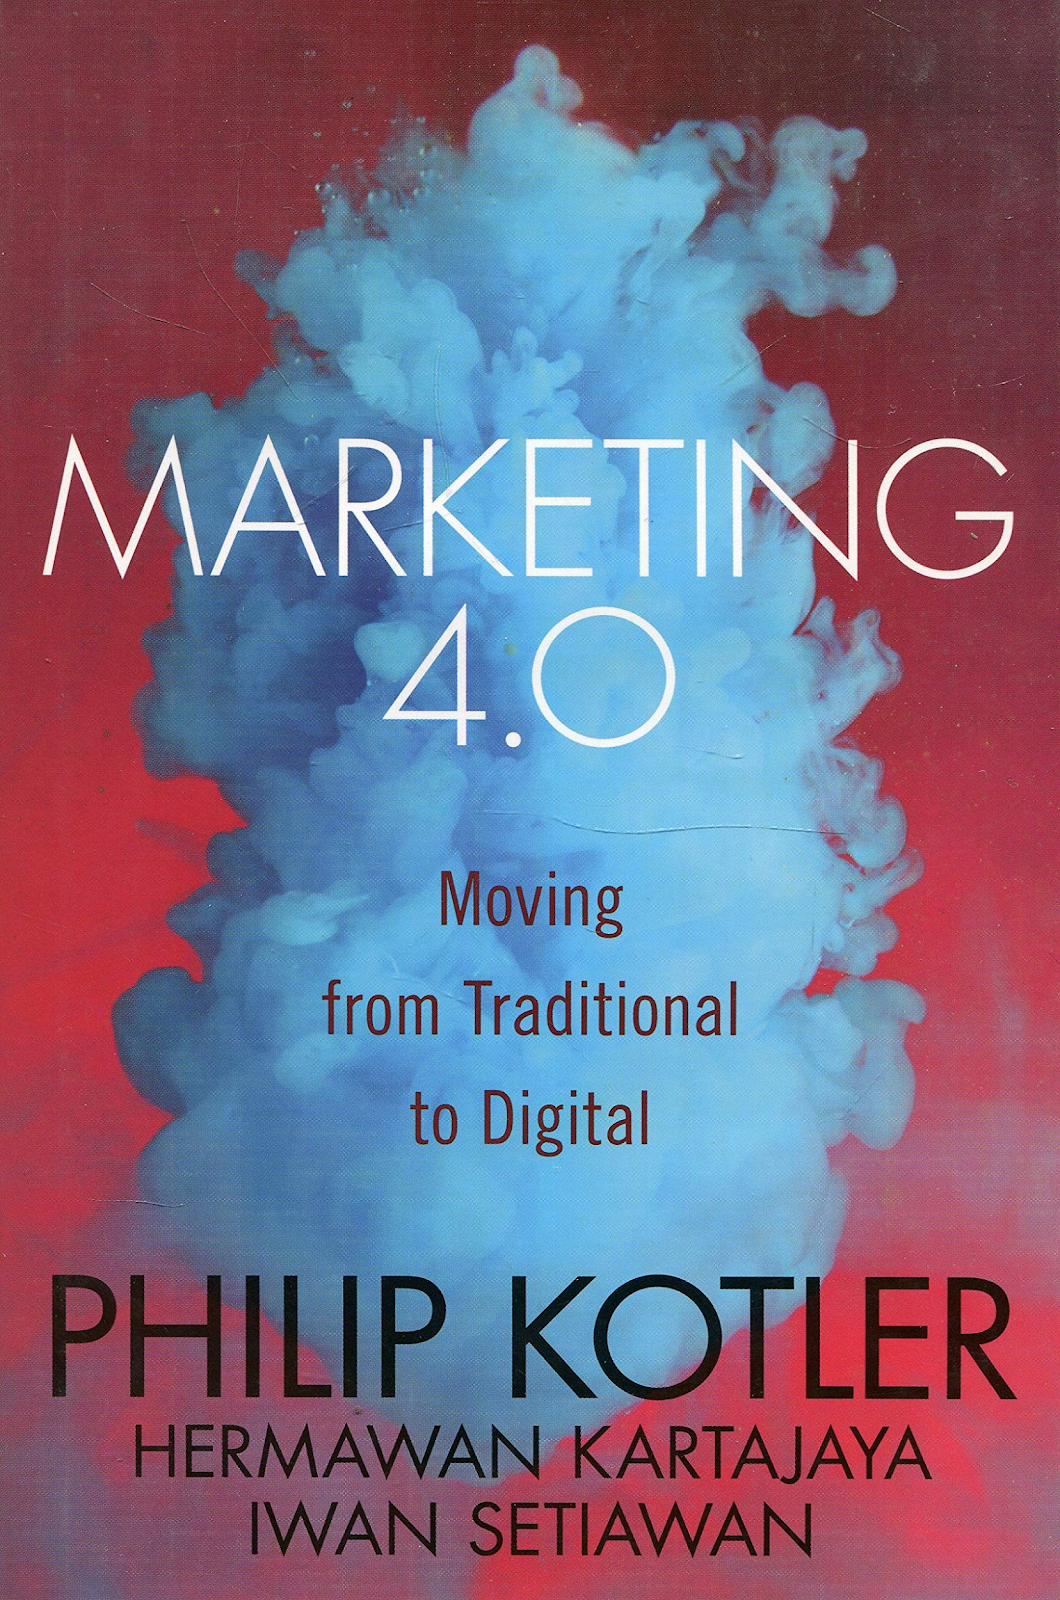 Buch „Marketing 4.0“.